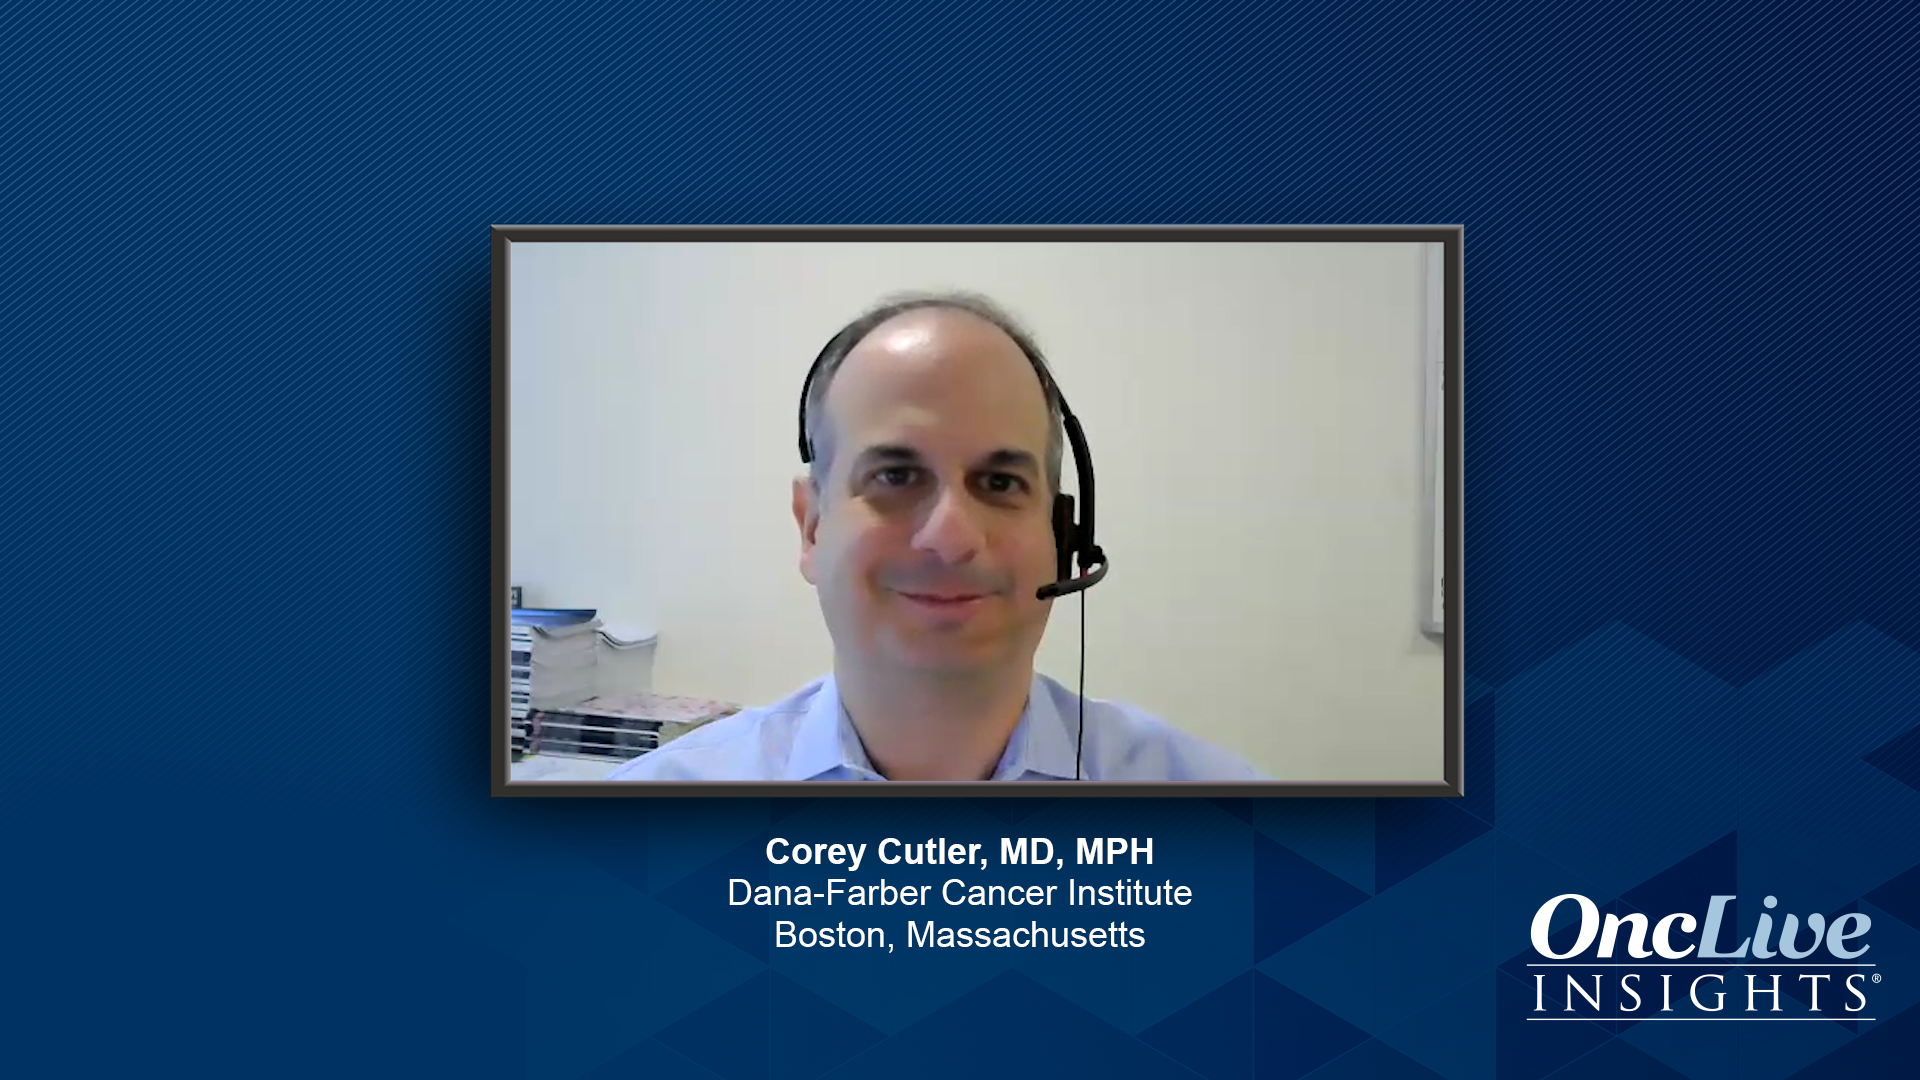 Corey Cutler, MD, MPH, an expert on GvHD